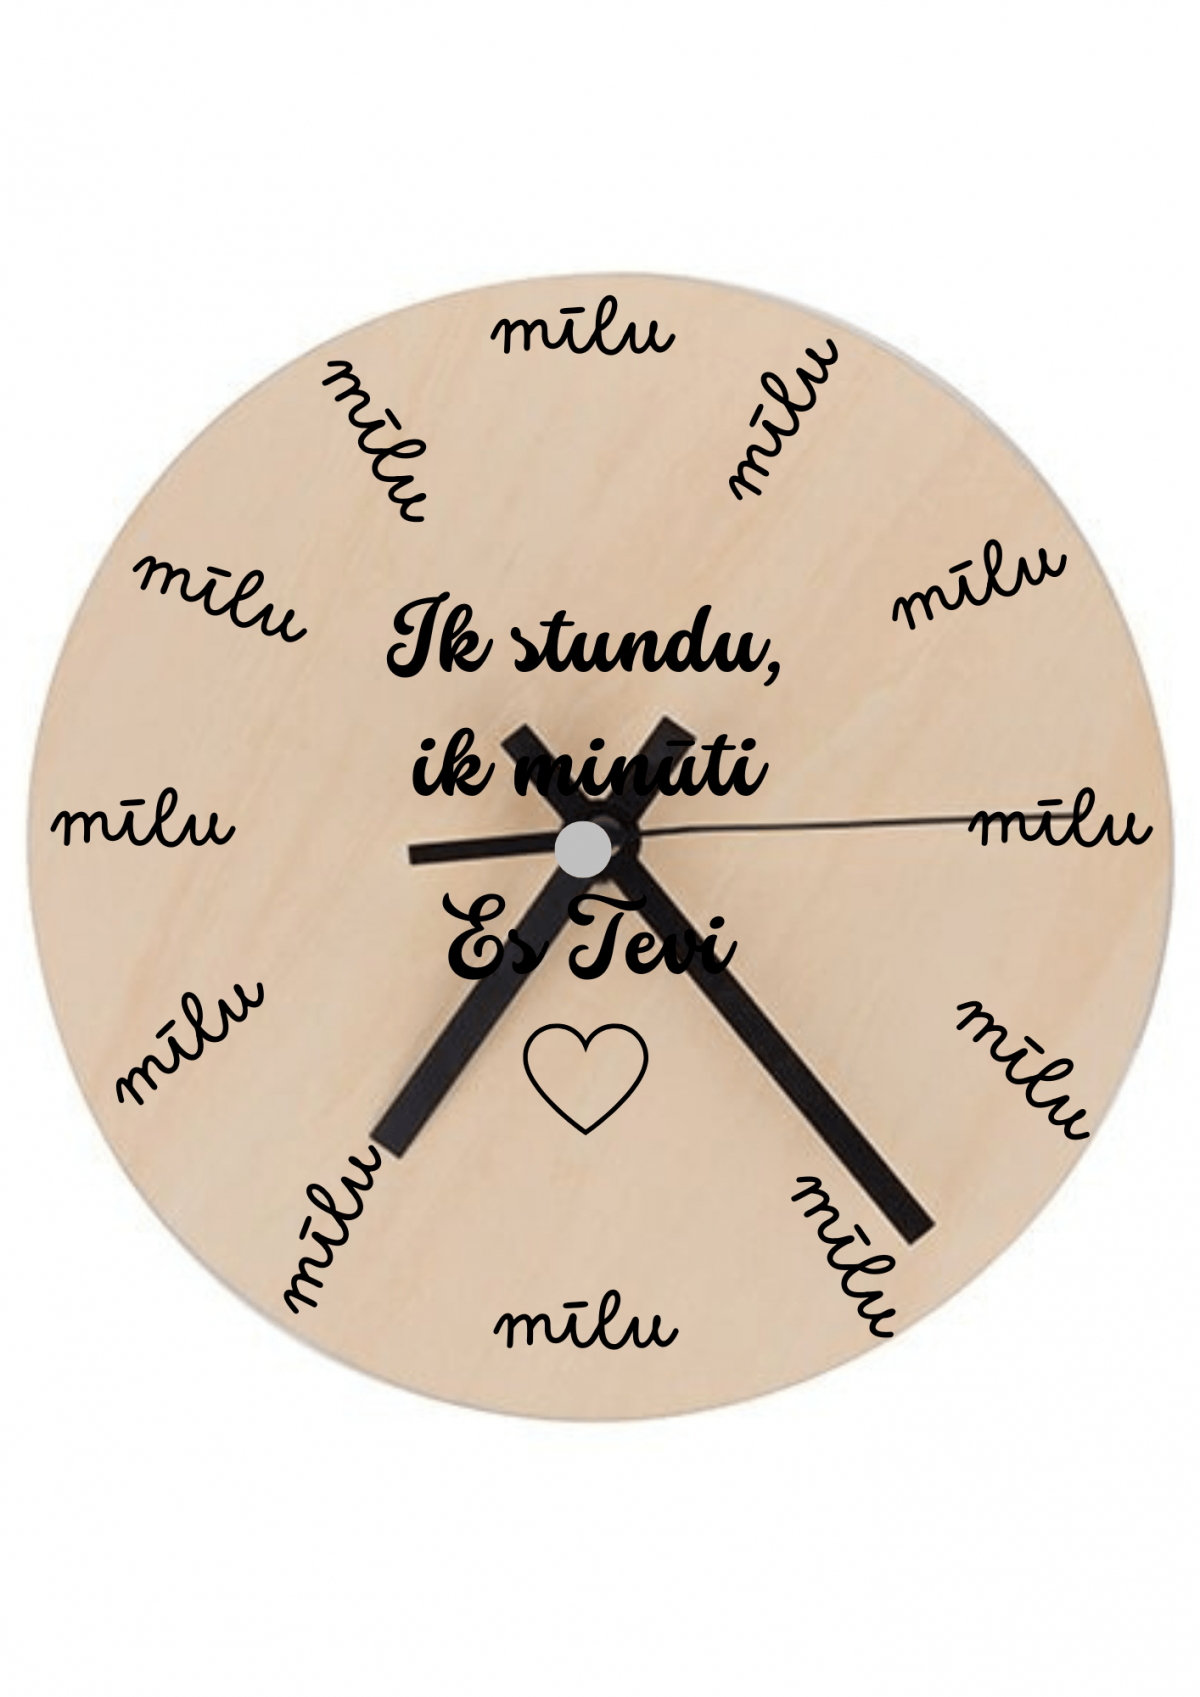 koka pulkstenis ar apdruku "Ik stundu, ik minūti", lieliska dāvana, dāvana Valentīndienā